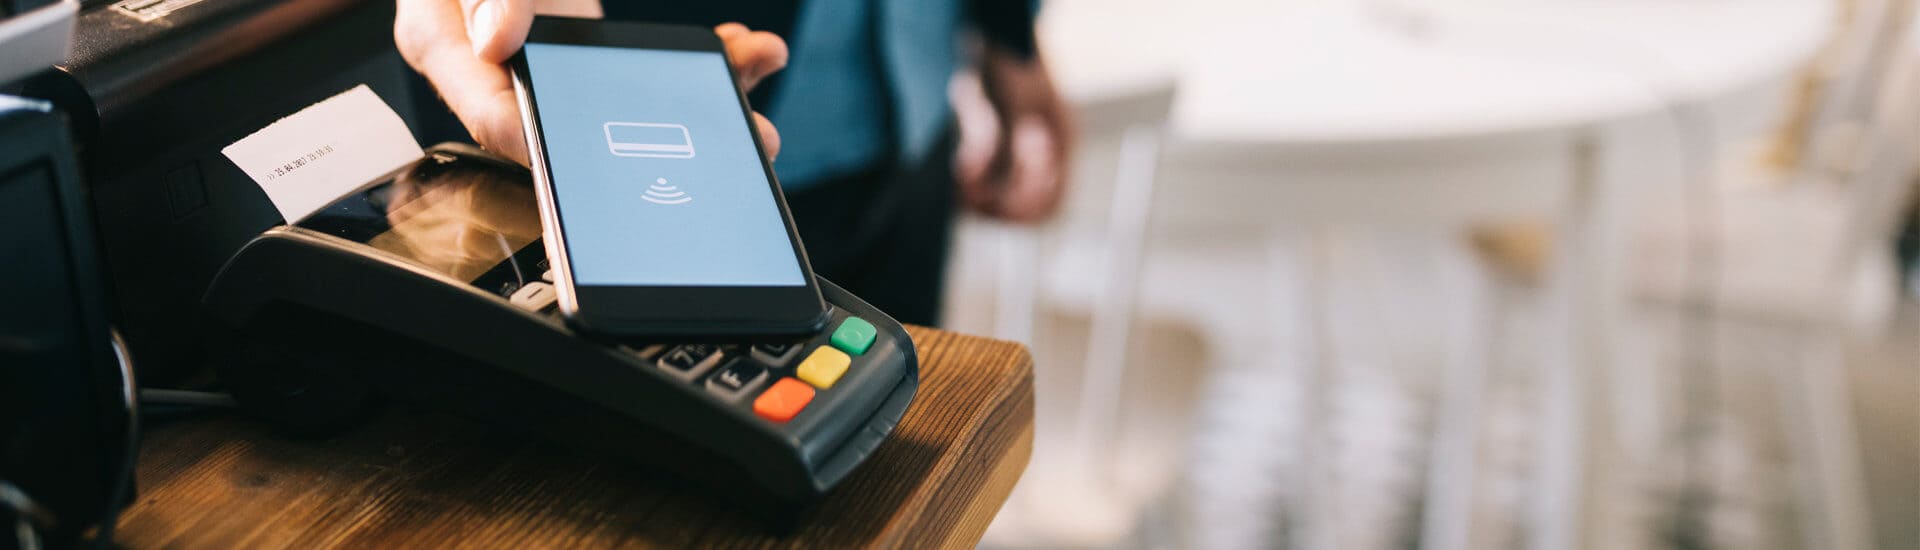 Bezahlen mit Smartphone am stationären Kartenlesegerät